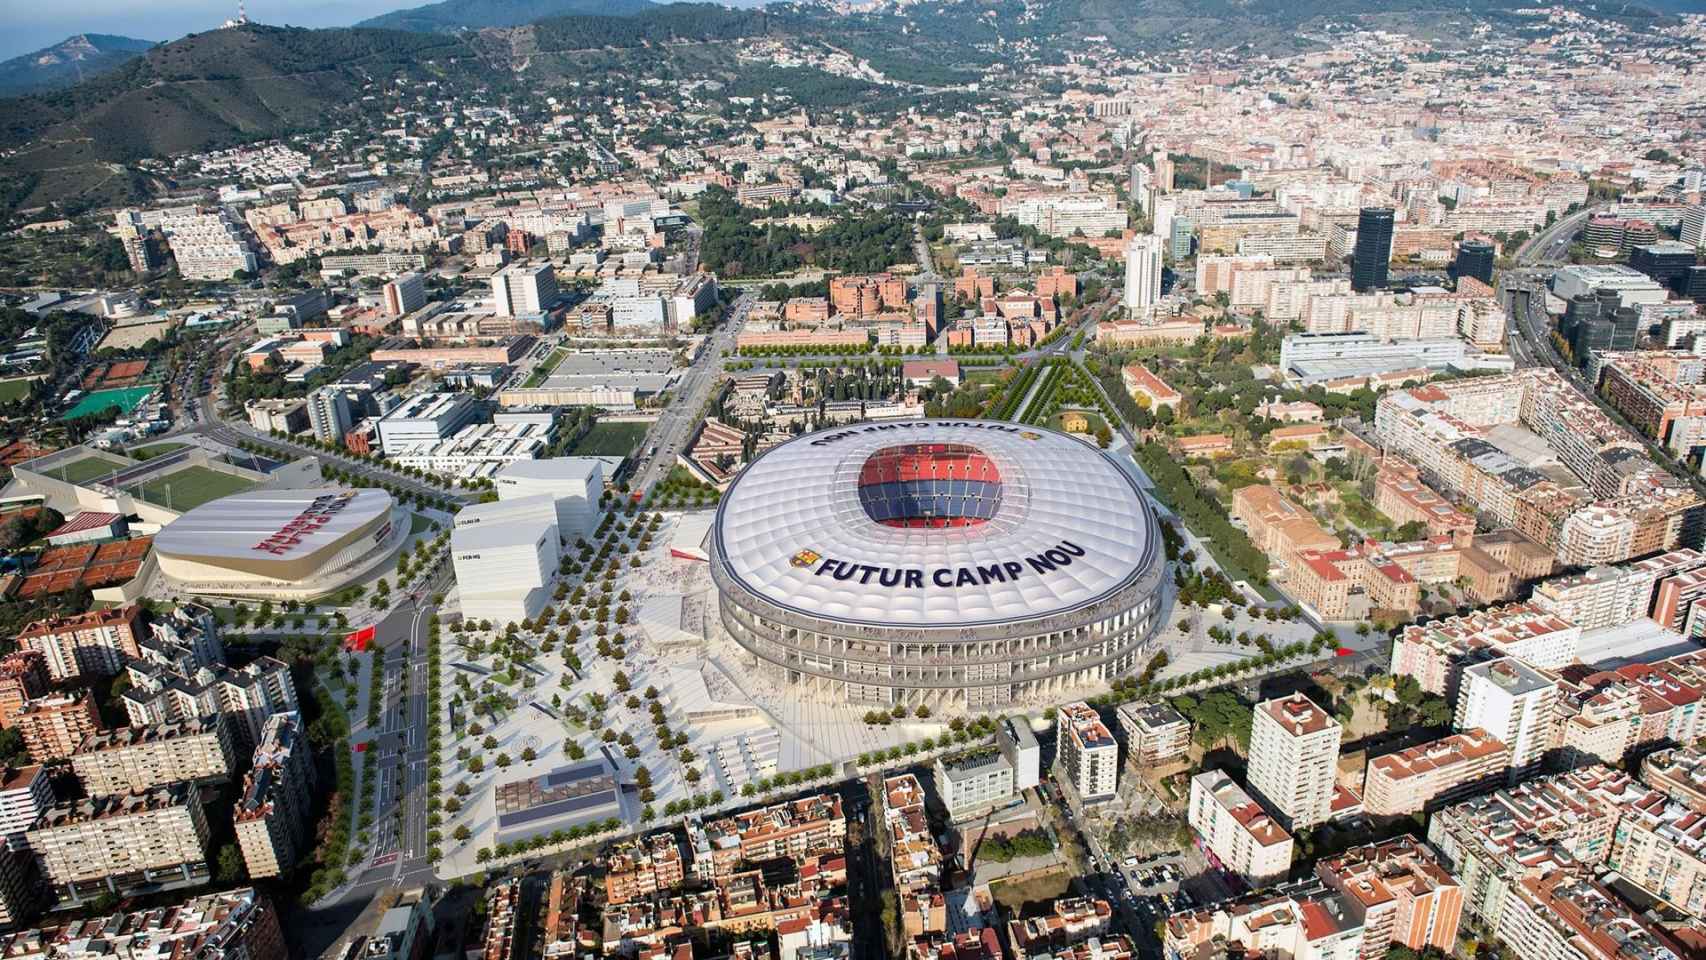 Imagen aérea del futuro Camp Nou / AJ BCN